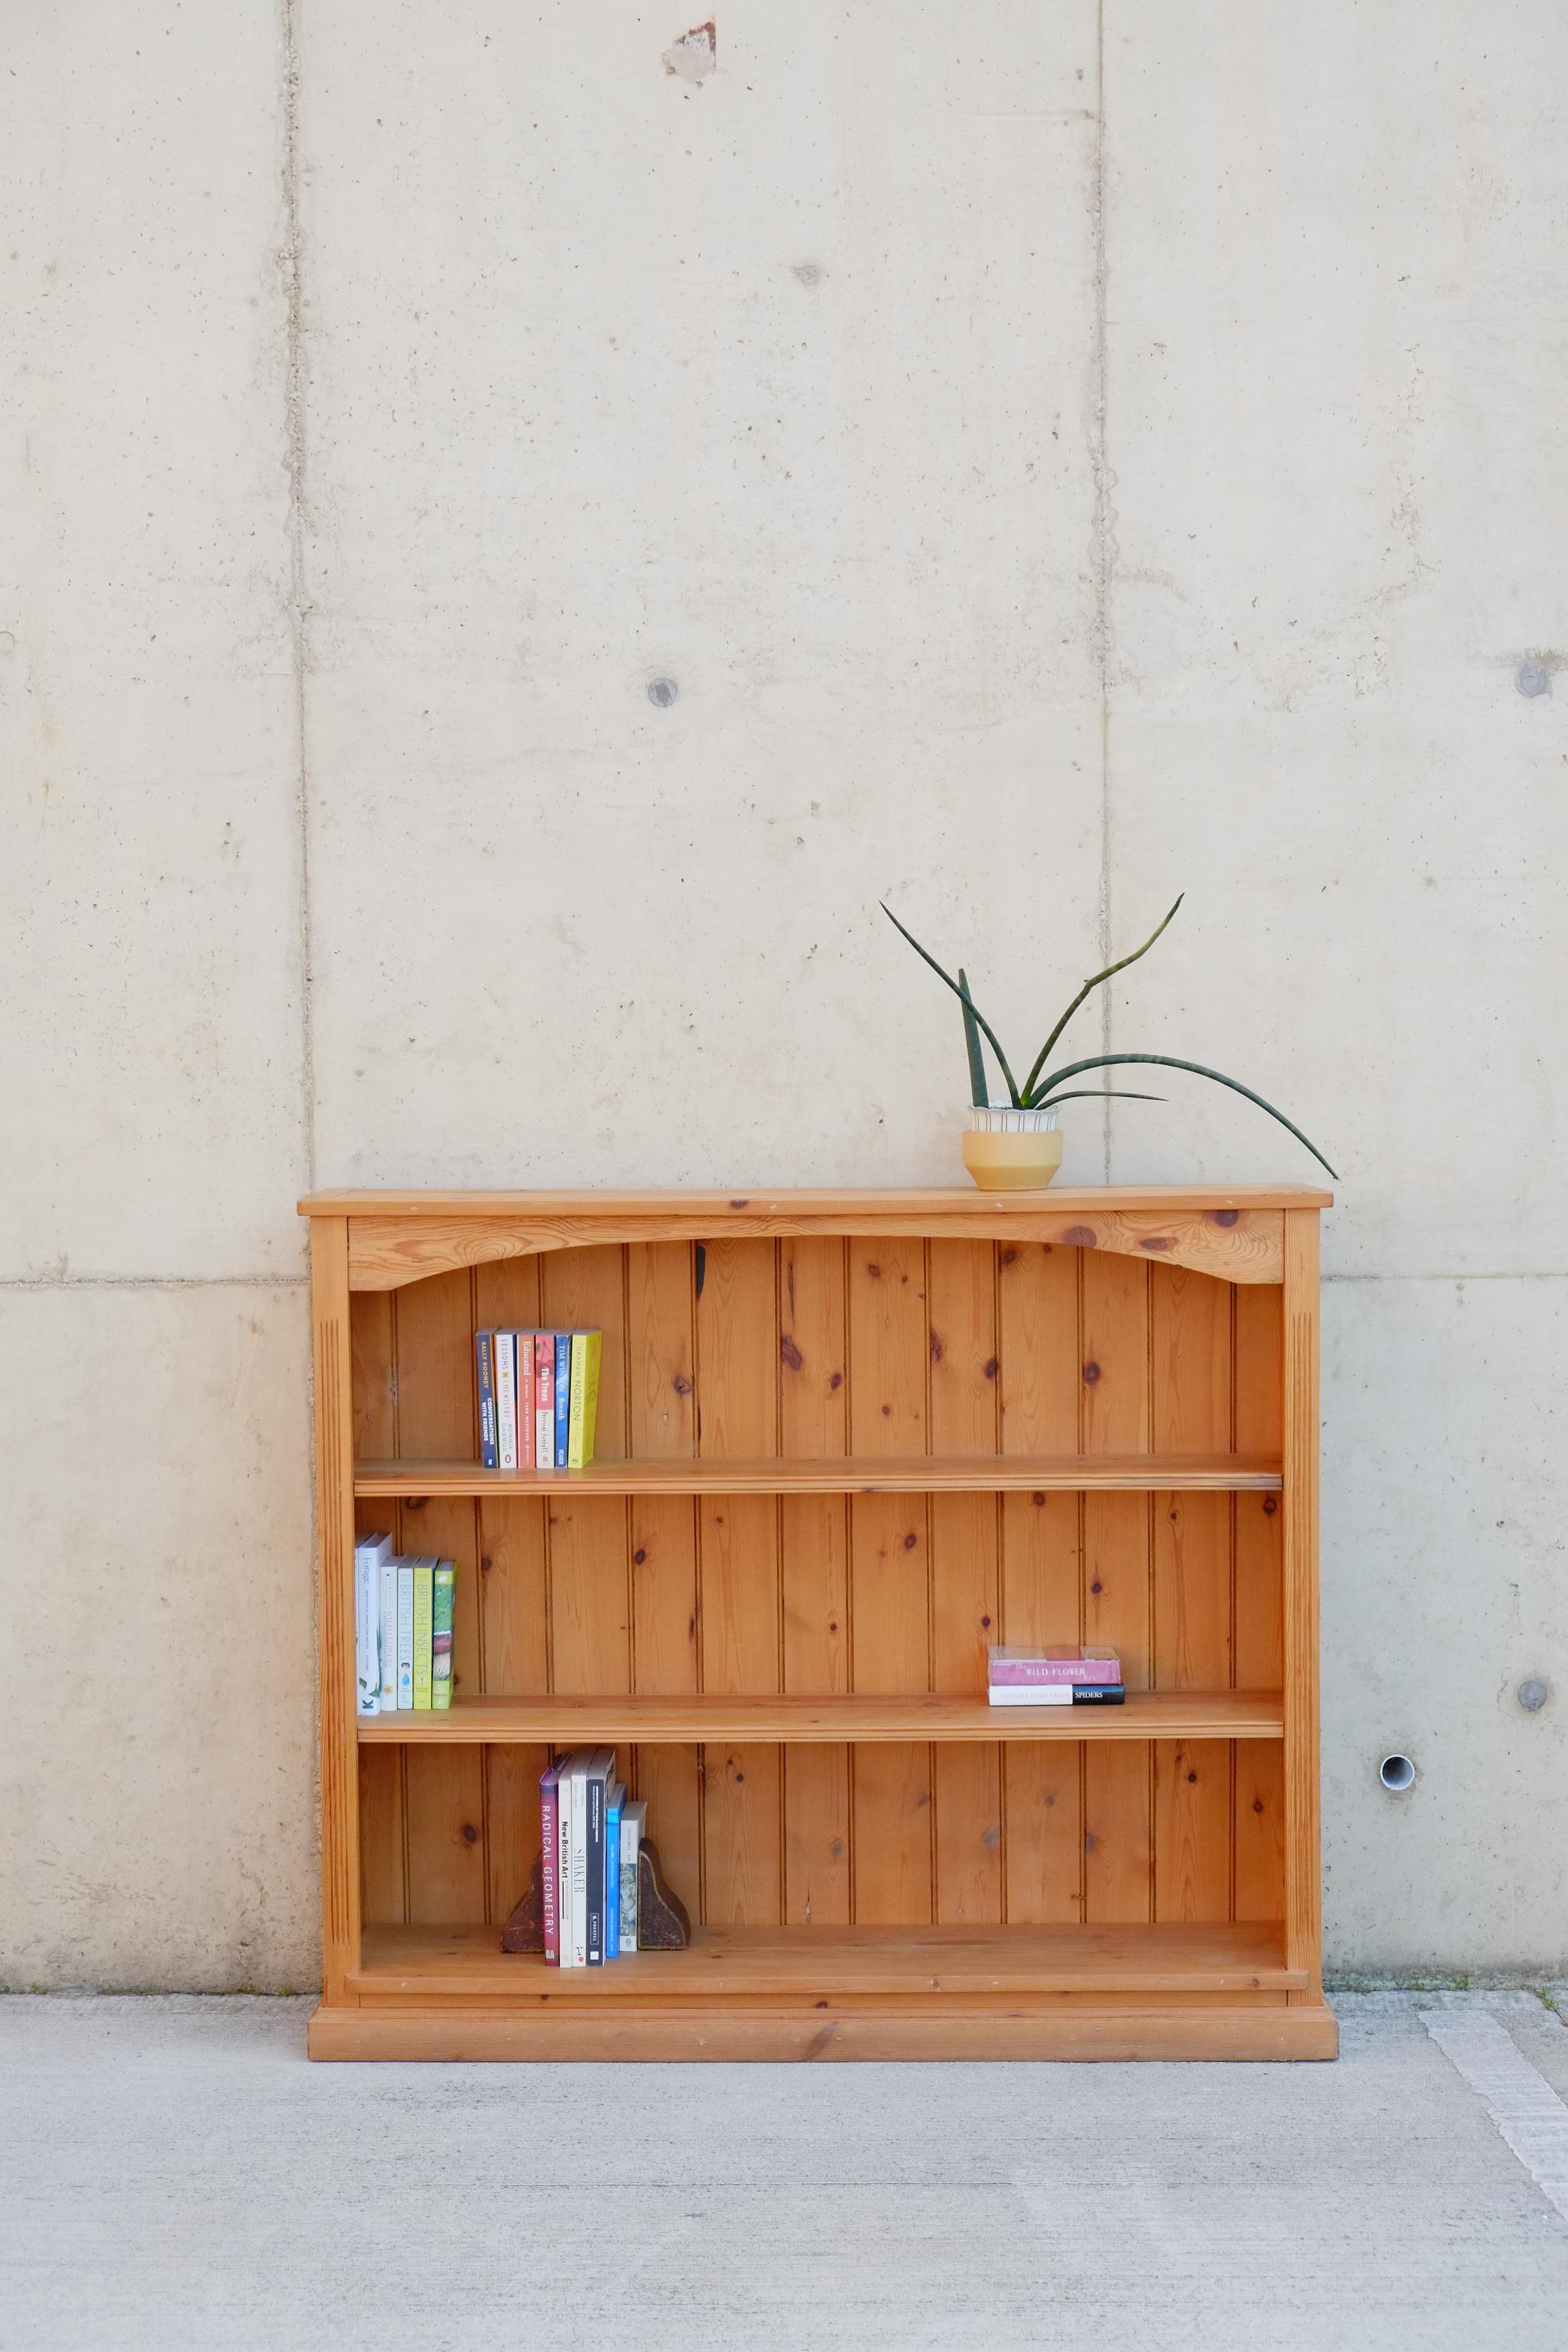 Ein sehr großes Bücherregal aus Kiefernholz. Dieses Bücherregal wirkt wie ein gemütlicher Bauernhof und bietet viel Platz für Bücher und Gegenstände. Schöne natürliche gewachste Kieferfarbe und Patina. Das Bücherregal hat geriffelte Kanten an den